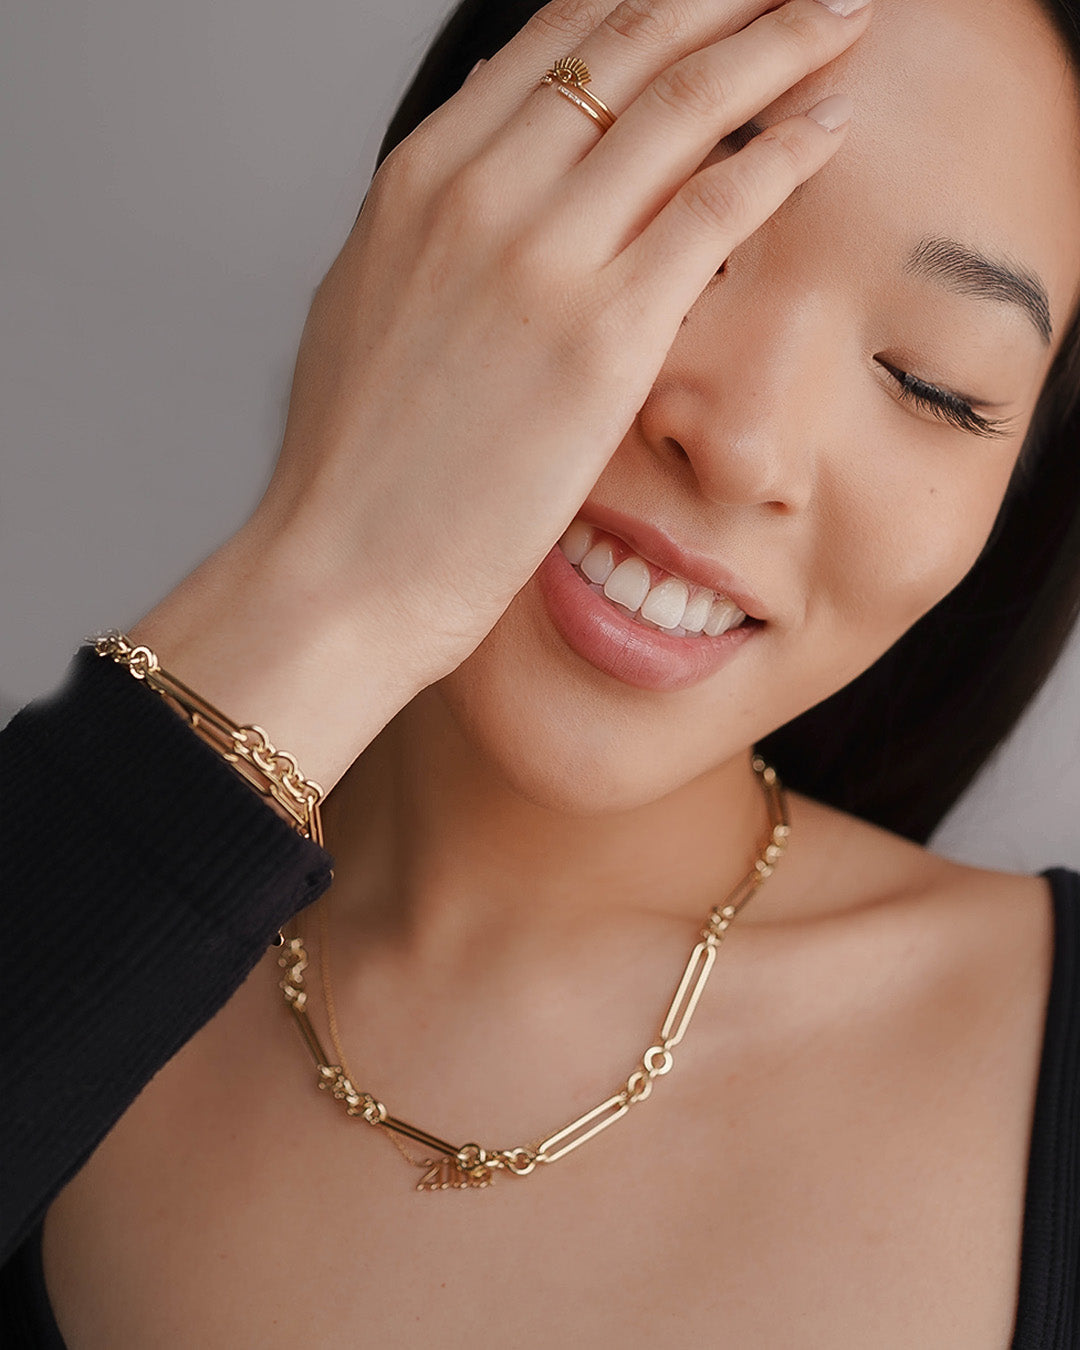 14K Gold Elongated Paper Clip Chain Bracelet